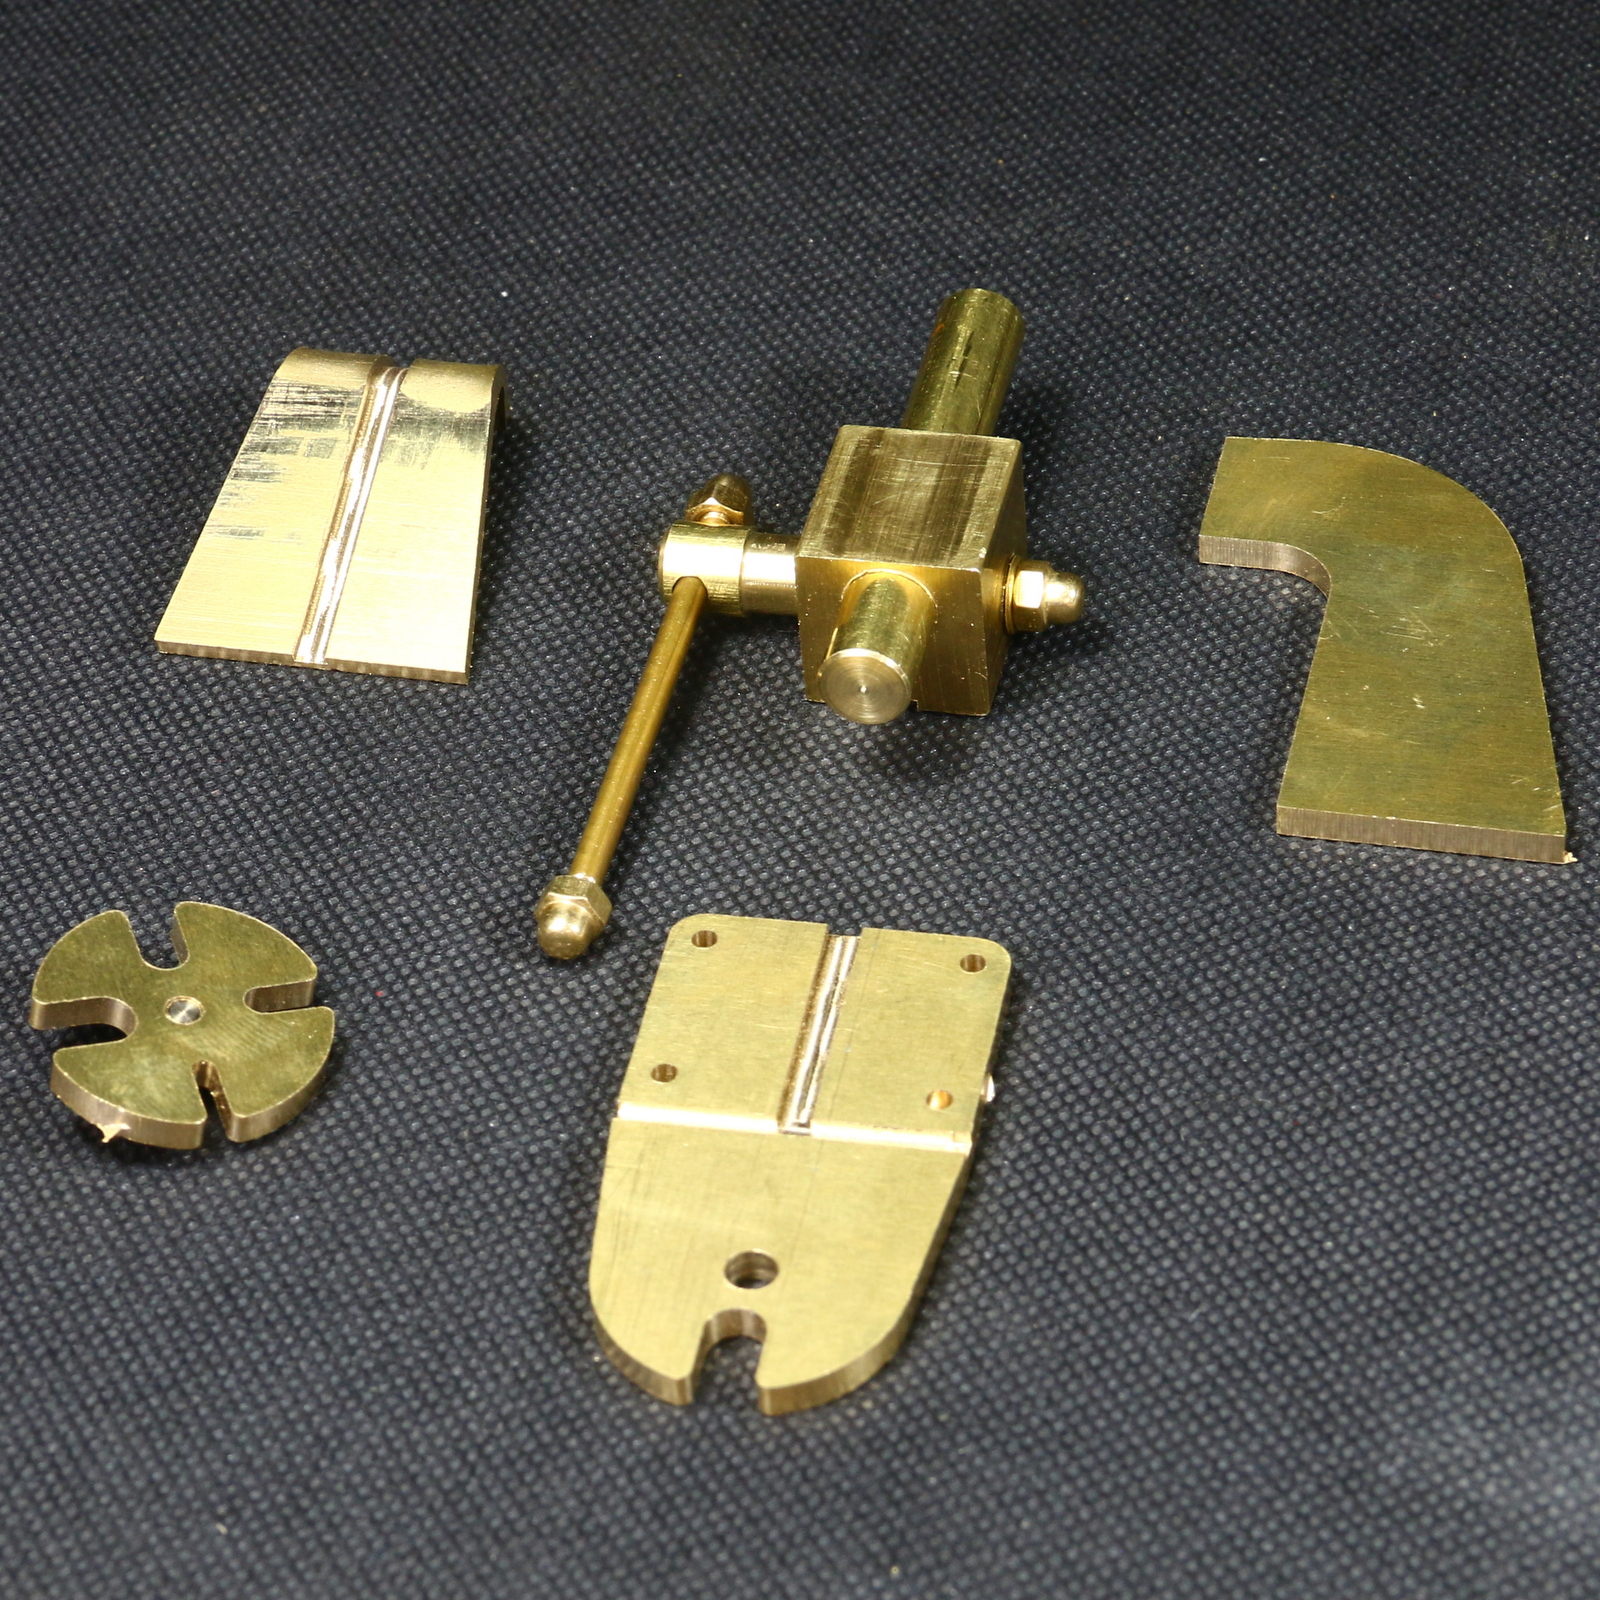 Rotary mandrel press kit